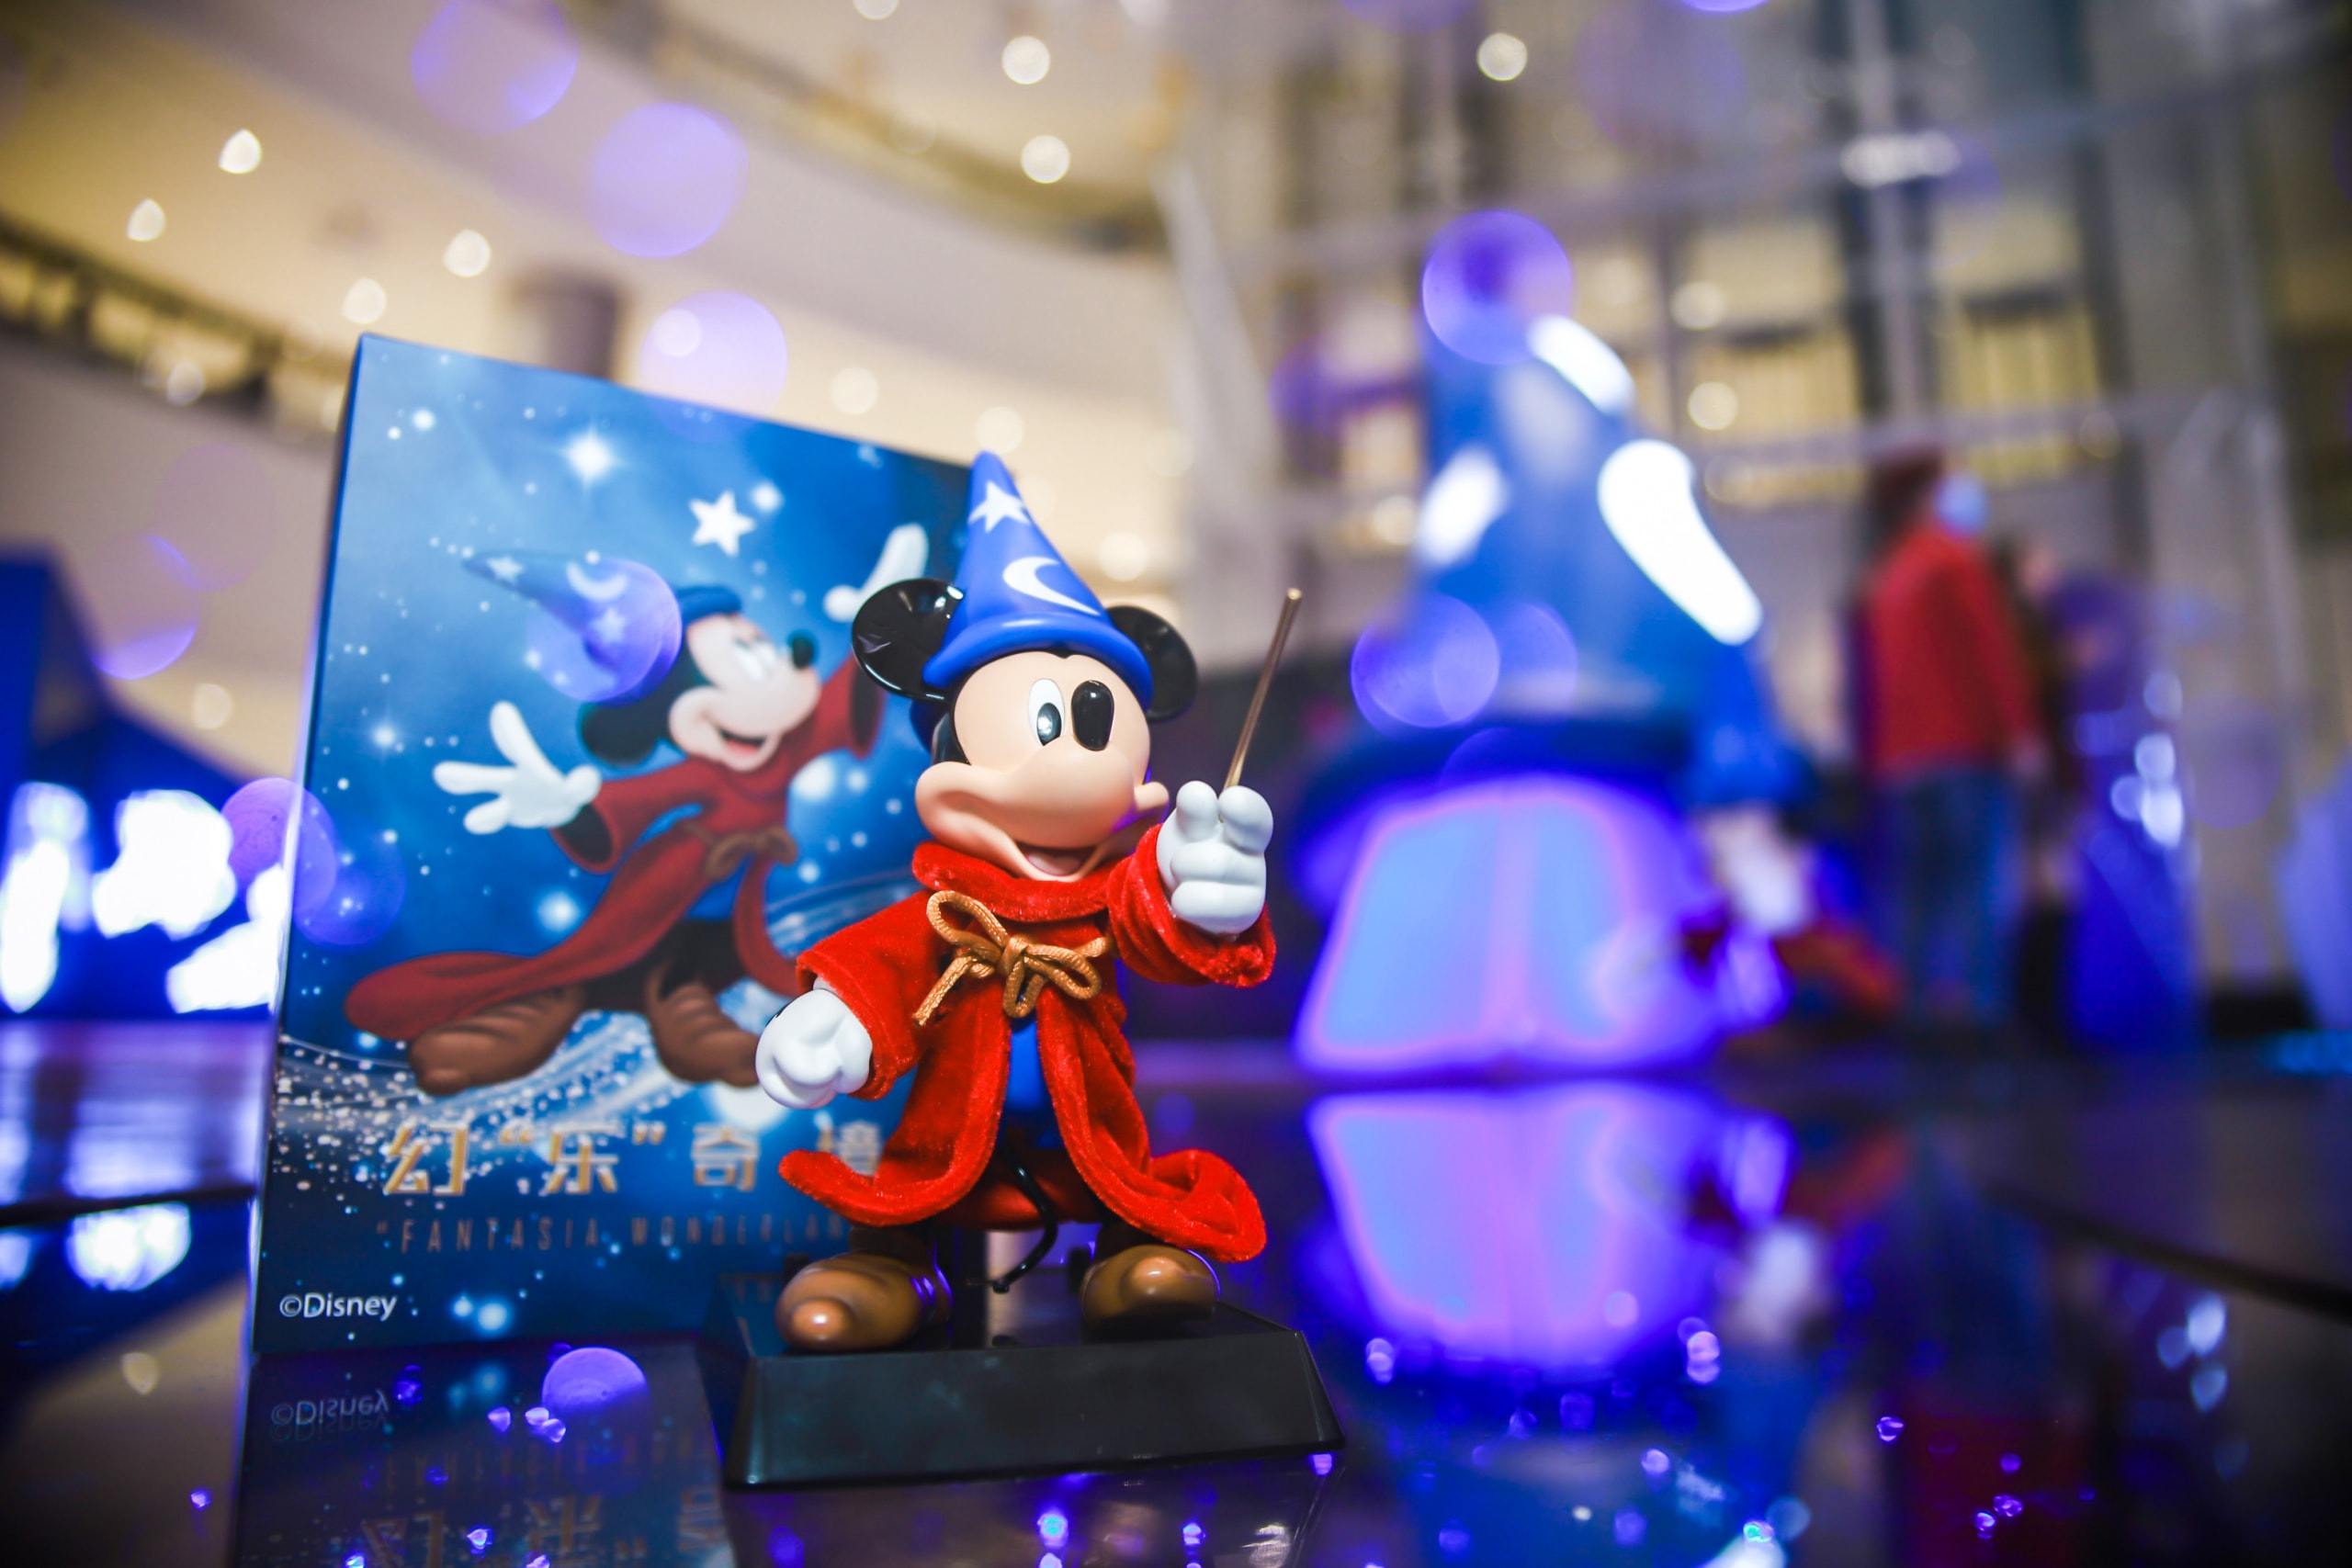 长沙 IFS 与迪士尼共同特别呈现「幻‘乐’奇境」商场展